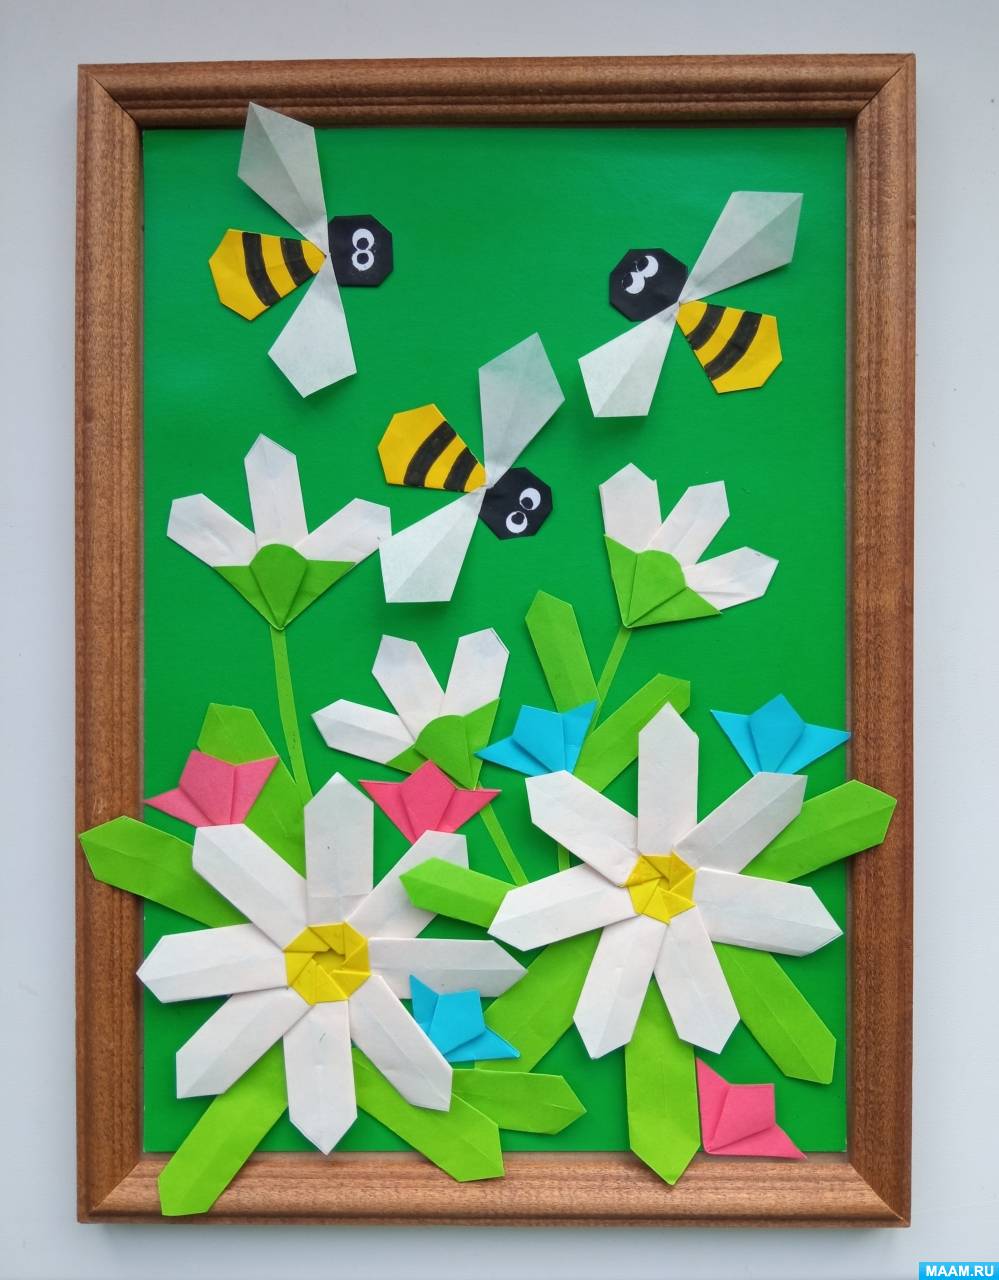 Мастер-класс по аппликации в технике оригами «Пчелки на полянке»